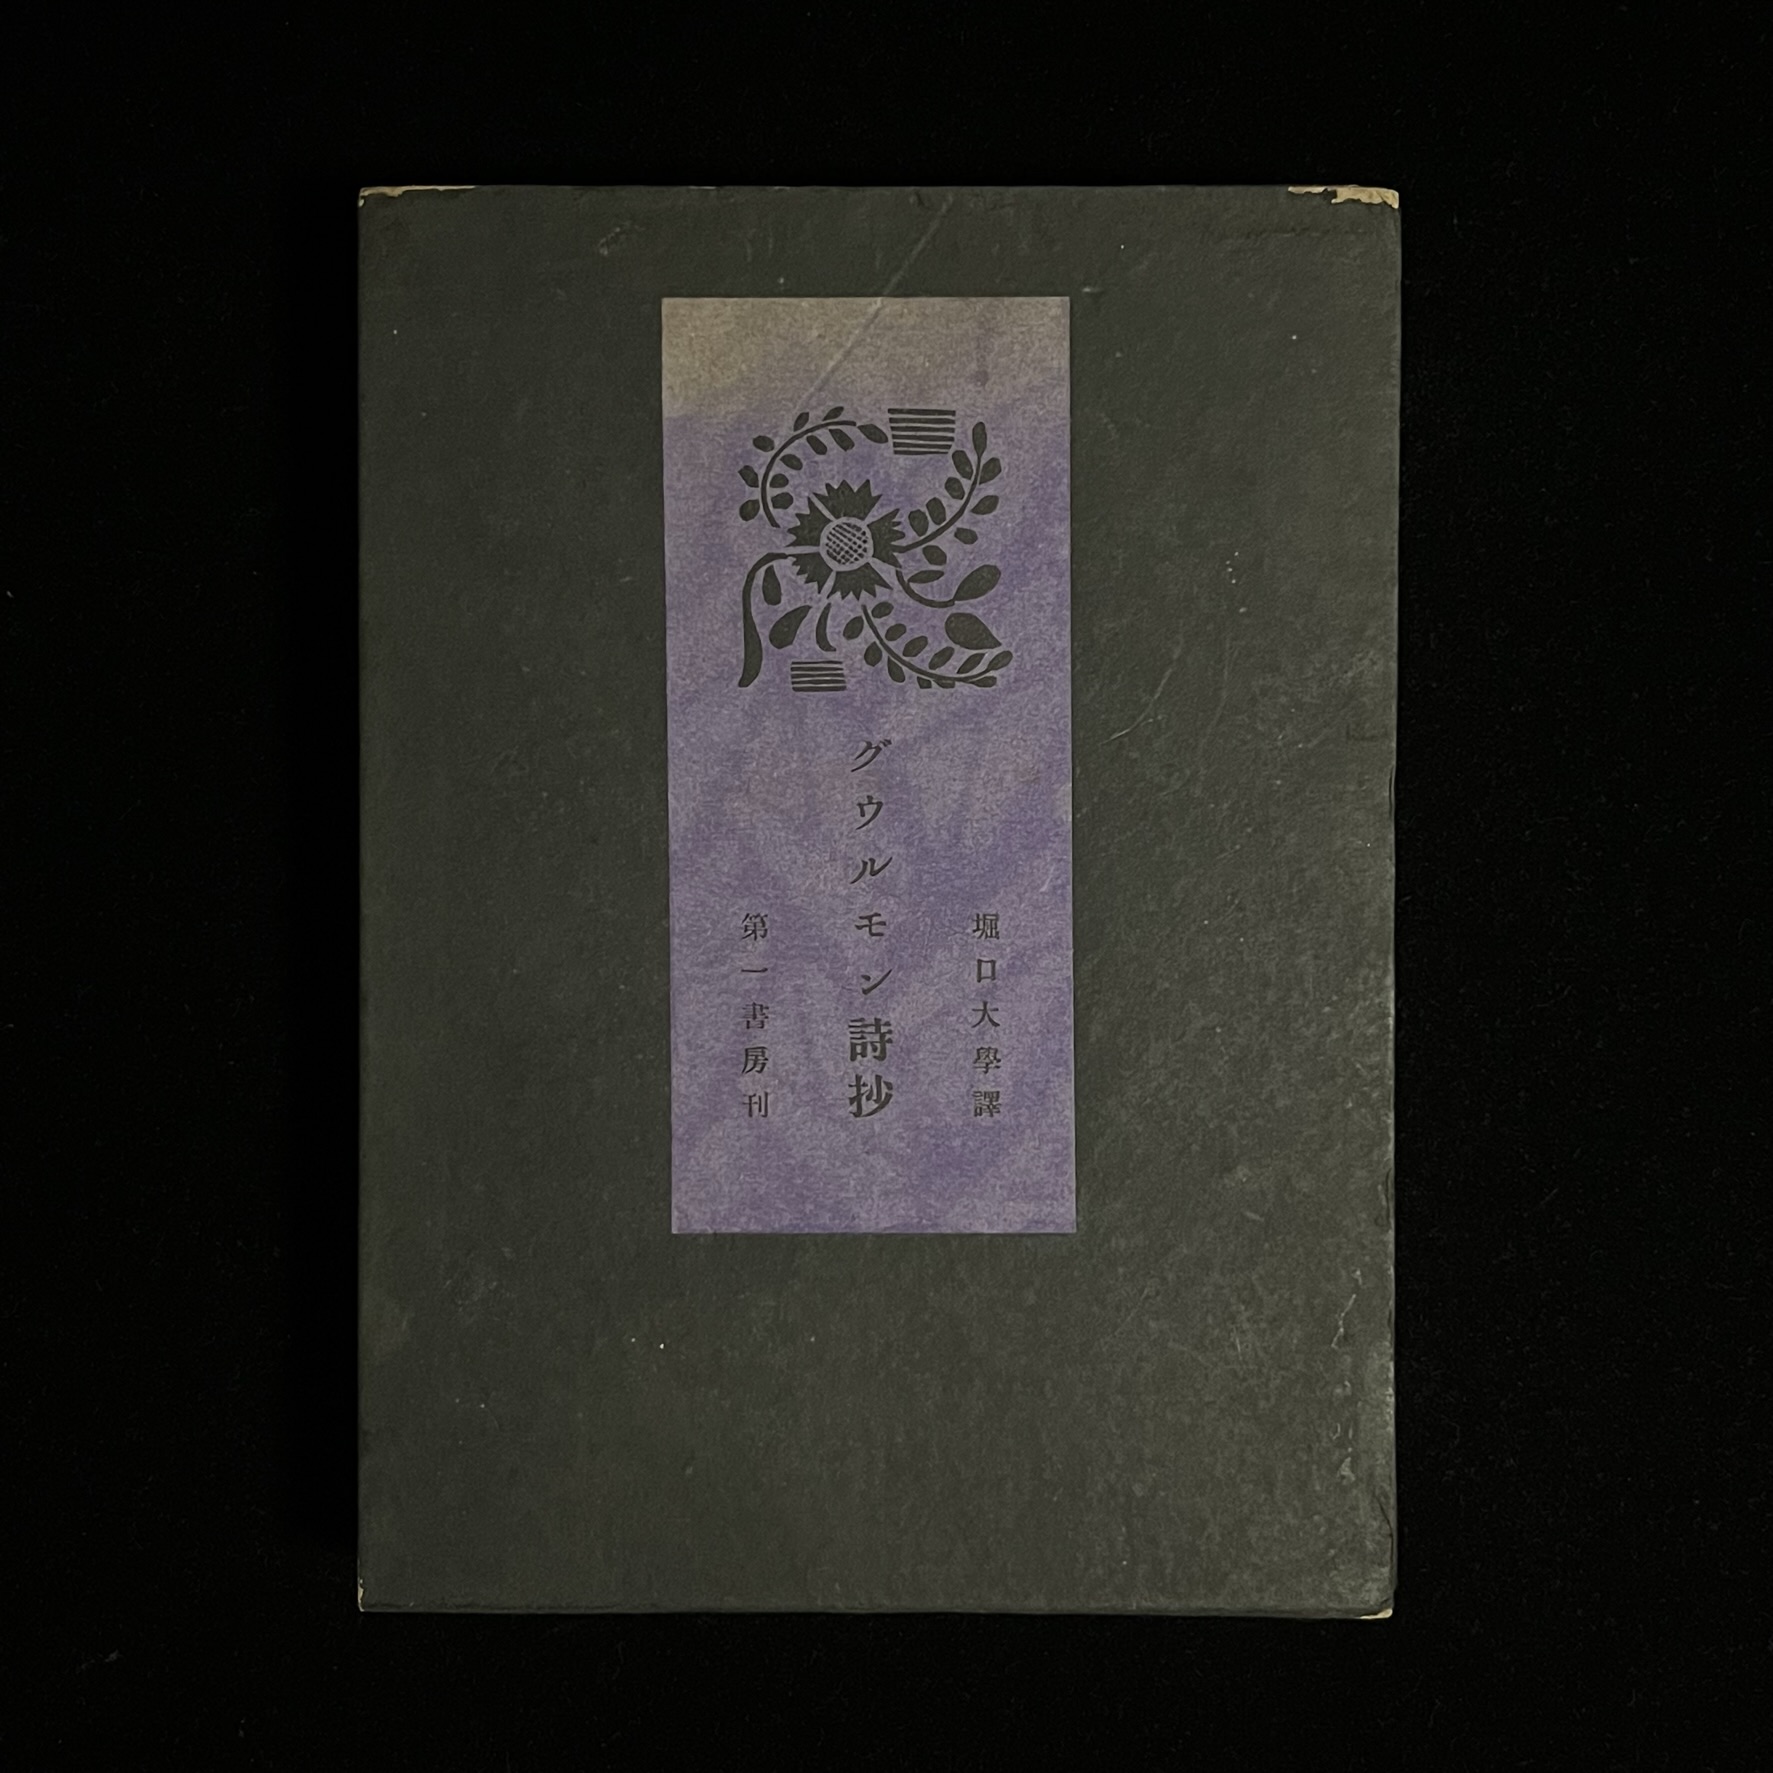 『グウルモン詩抄』の本の箱の写真。深い緑の箱の表紙の真ん中に文様の地と草花のイラストが描かれた紫色の紙が貼られており、タイトルと訳者の名前、出版社名が書かれています。